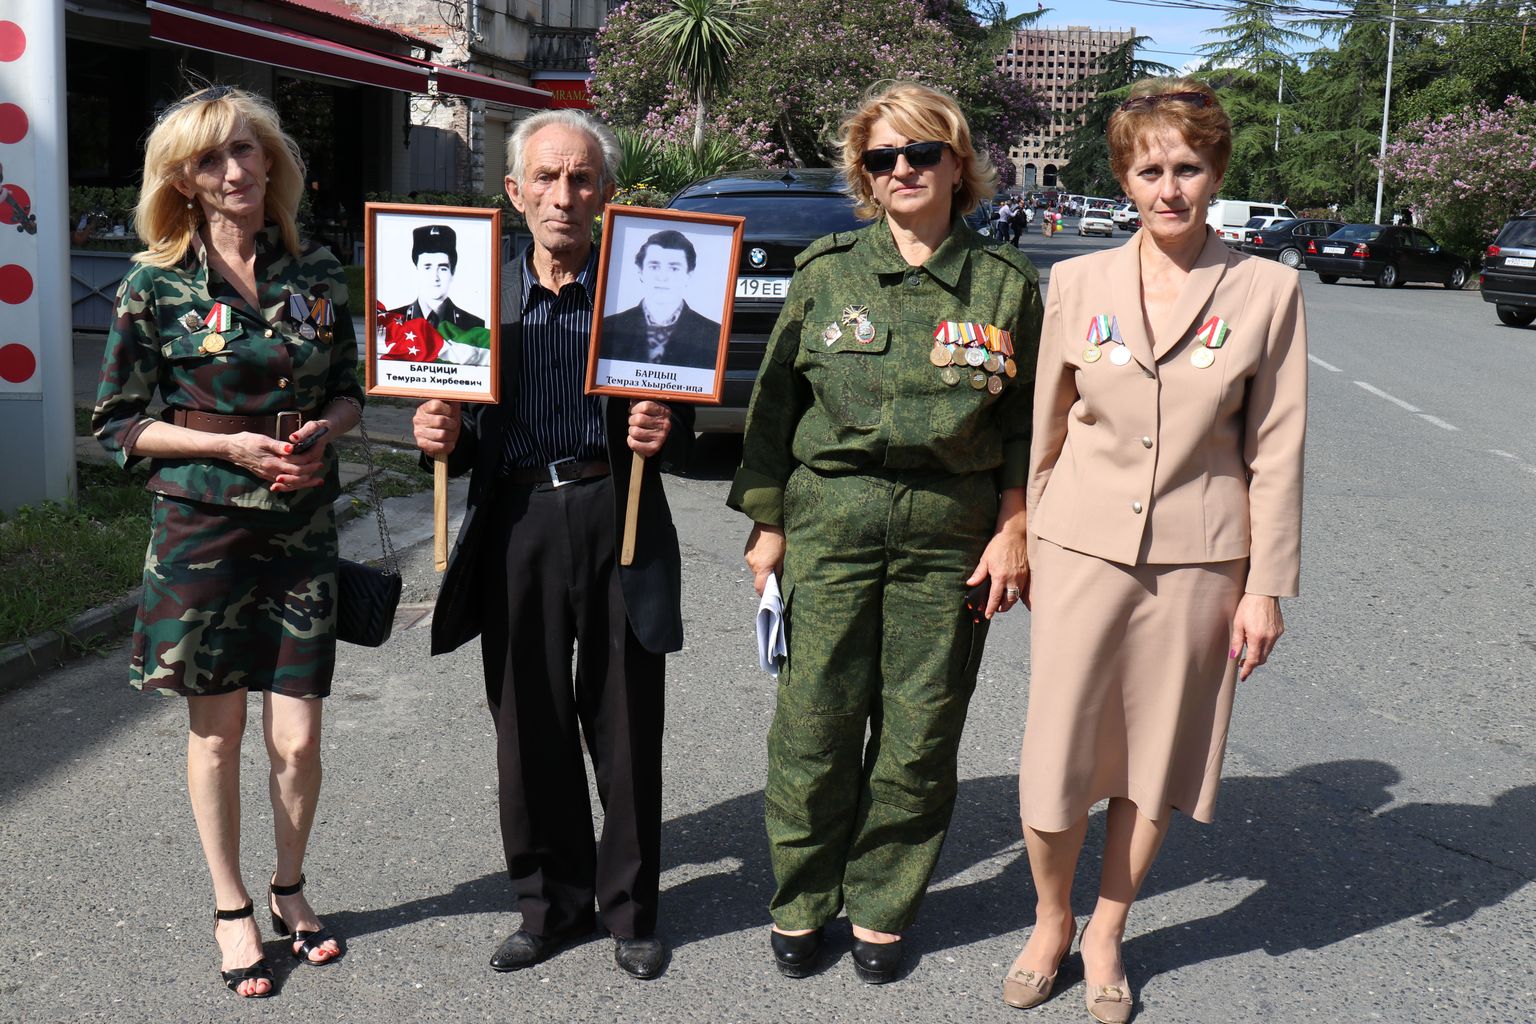 Abhaasid loevad oma suurimaks pühaks 30. Septembril tähistatavat võidupäeva, millega nad tähistavad sõjas Gruusiaga saavutatud võitu 1993. aastal. Sellest päevast loevad abhaasid end de facto iseseisvaks riigiks, mida aga isegi Venemaa tunnustas esimesena alles 15 aastat hiljem. Fotol näitab üks abhaasi pere oma hukkunud sugulasi. Otsustades vormi ja medalite järgi, osalesid ka need kolm naist sõjas.